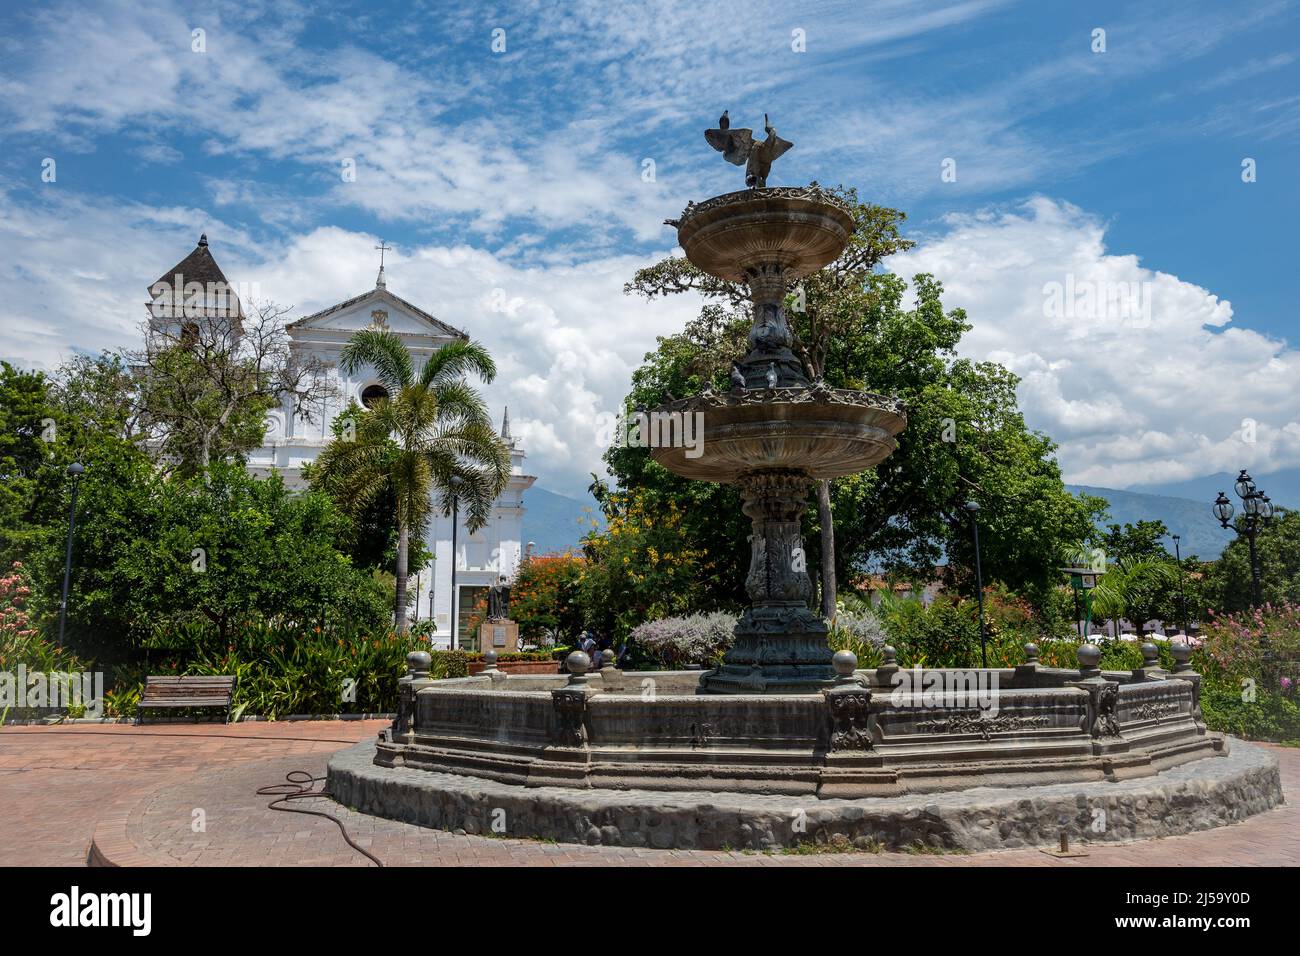 Wasserbrunnen im Stadtzentrum von Santa Fe de Antioquia, Kolumbien, Südamerika. Stockfoto